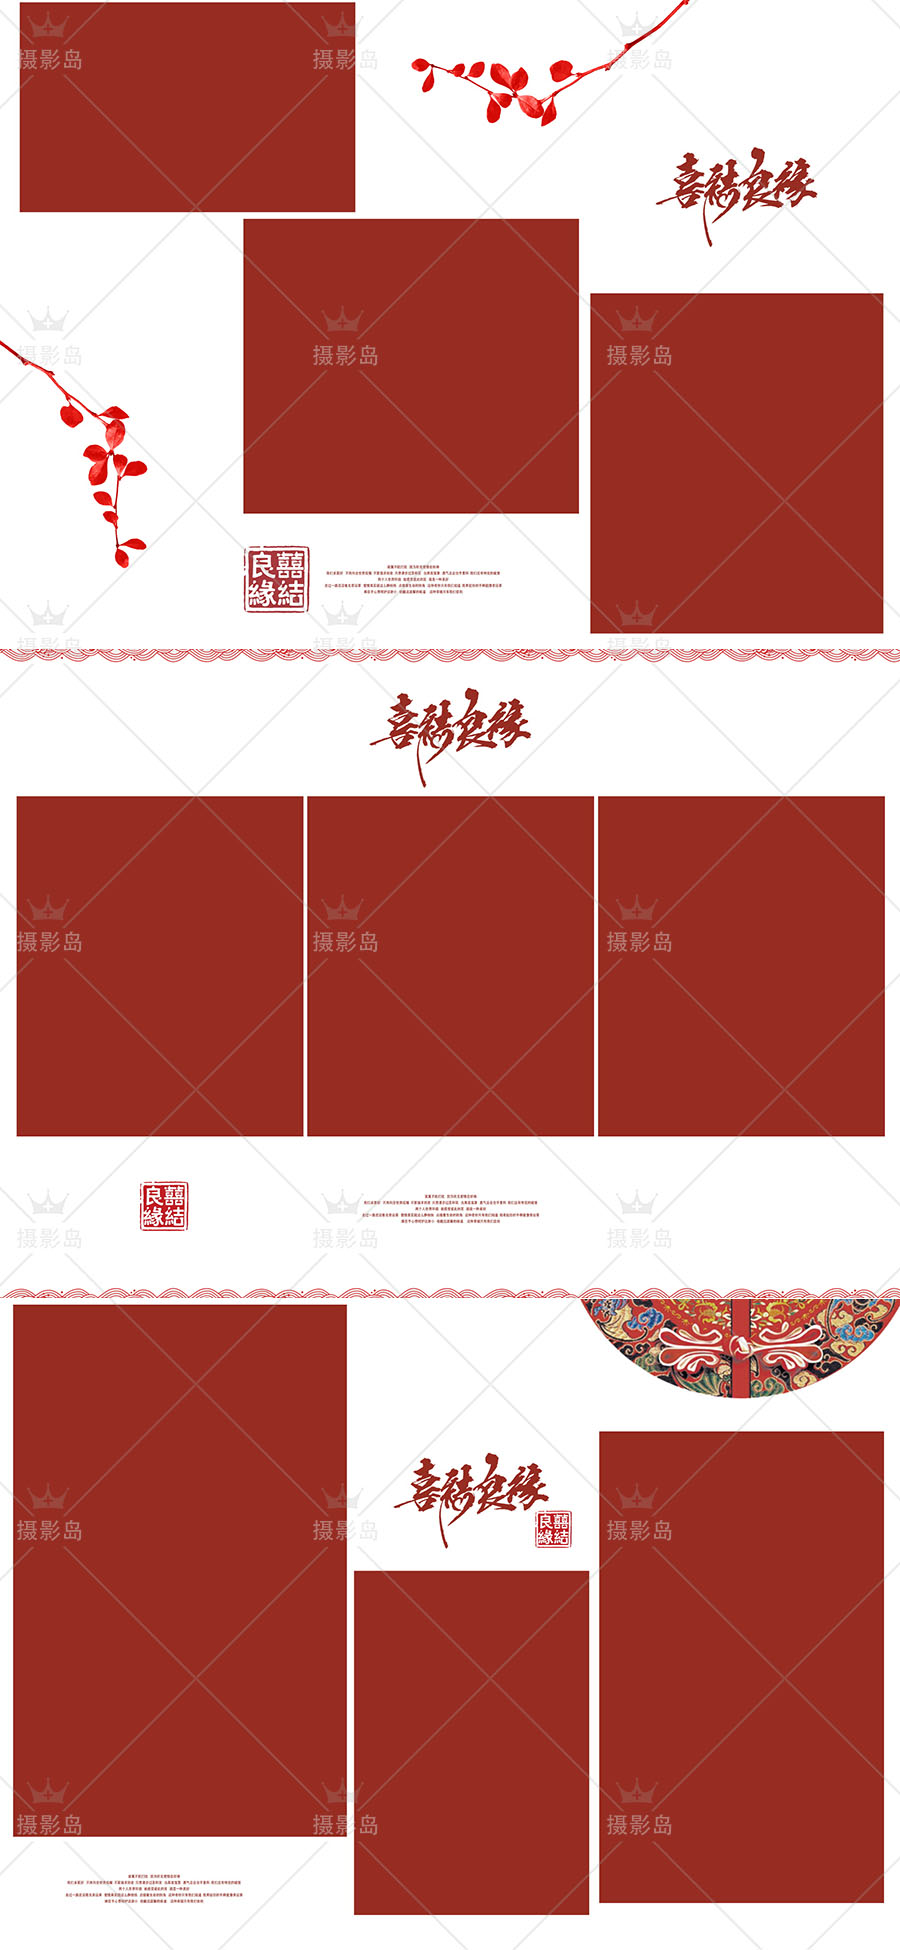 古装中国风主题婚纱摄影PSD相册模板， 影楼红色喜嫁相册竖板排版素材